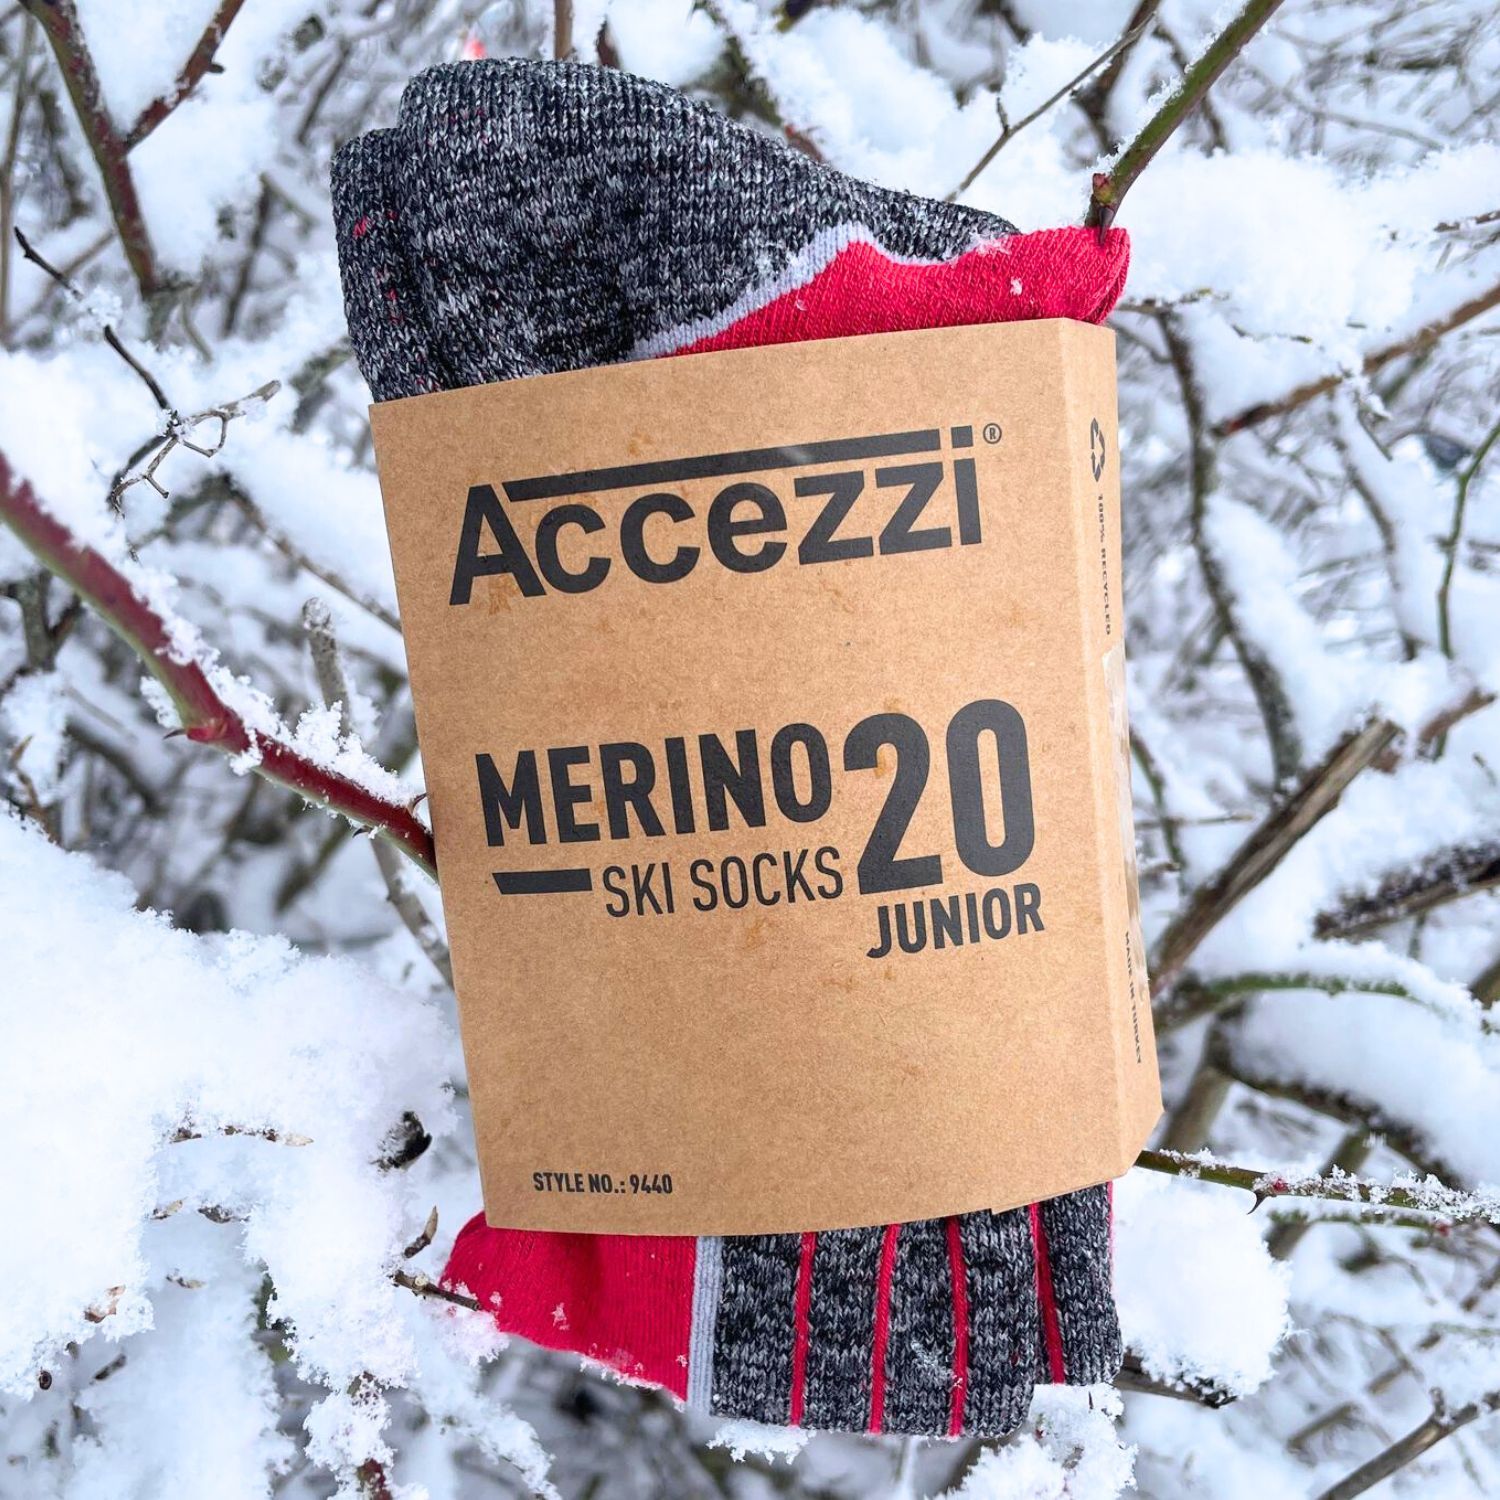 Accezzi Merino 20, chaussettes de ski, 2 paires, junior, rouge